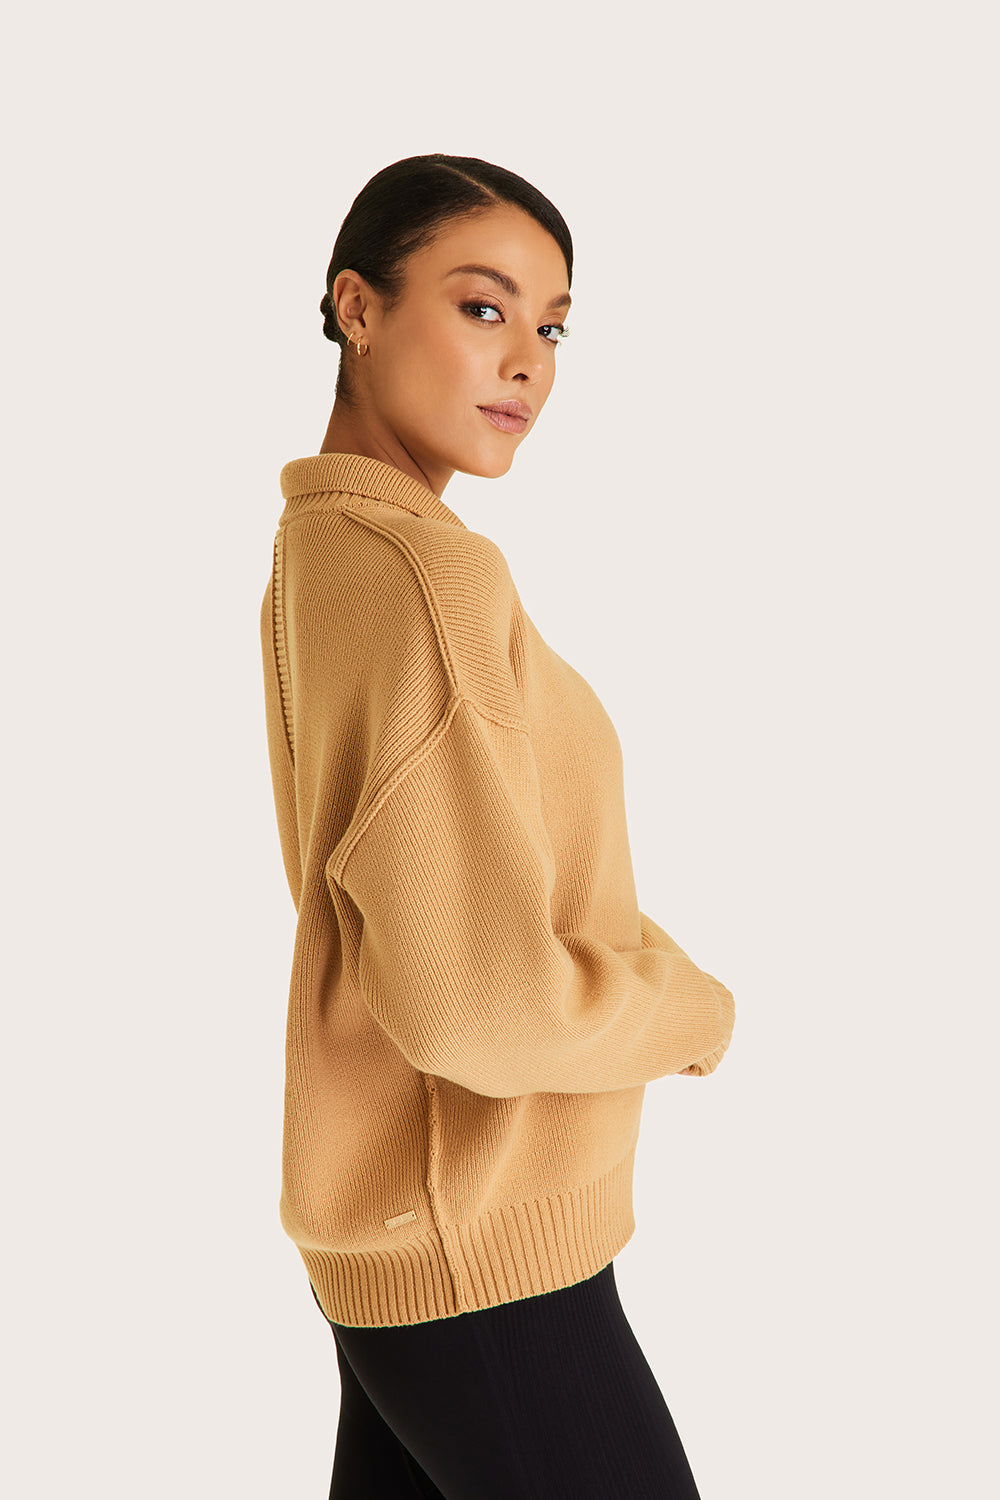 Alala women's collared knit sweater in beige